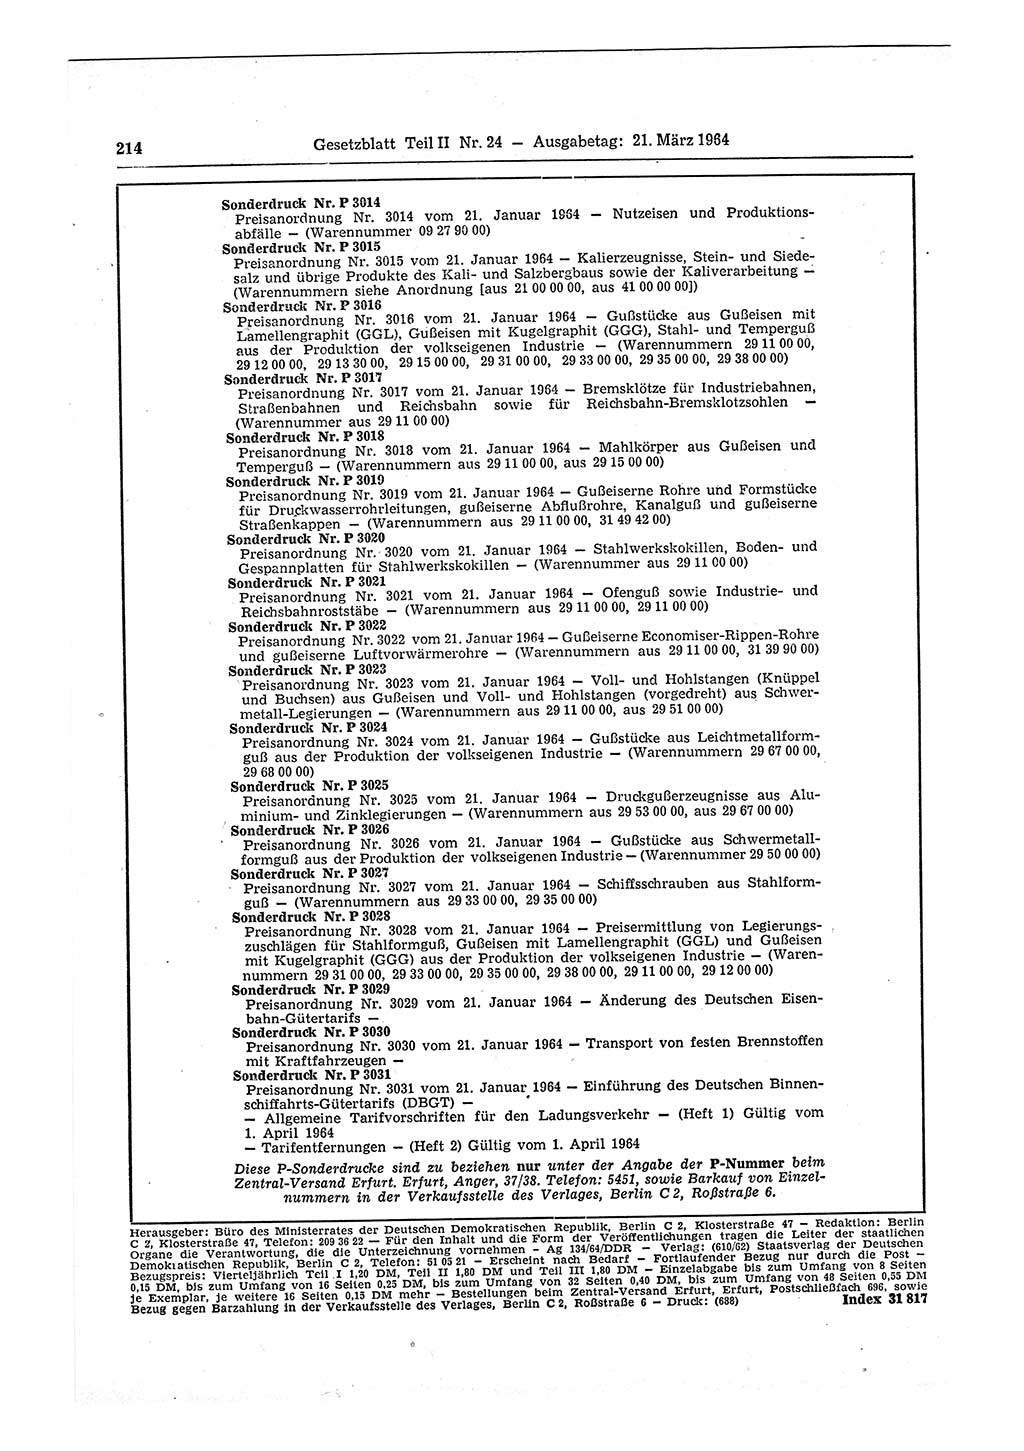 Gesetzblatt (GBl.) der Deutschen Demokratischen Republik (DDR) Teil ⅠⅠ 1964, Seite 214 (GBl. DDR ⅠⅠ 1964, S. 214)